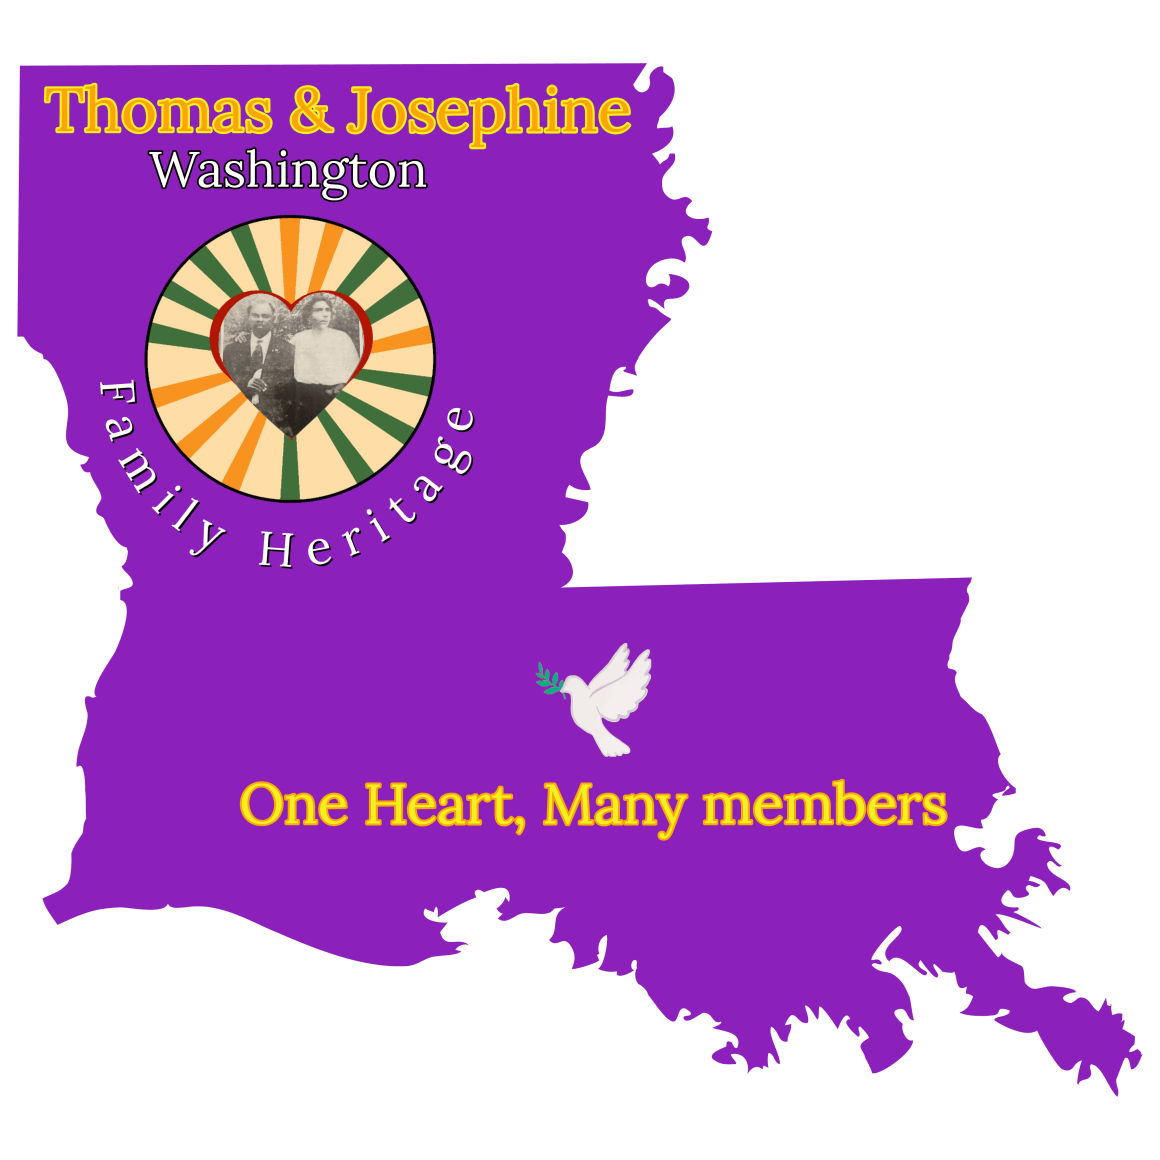 Thomas & Josephine Washington Family Reunion